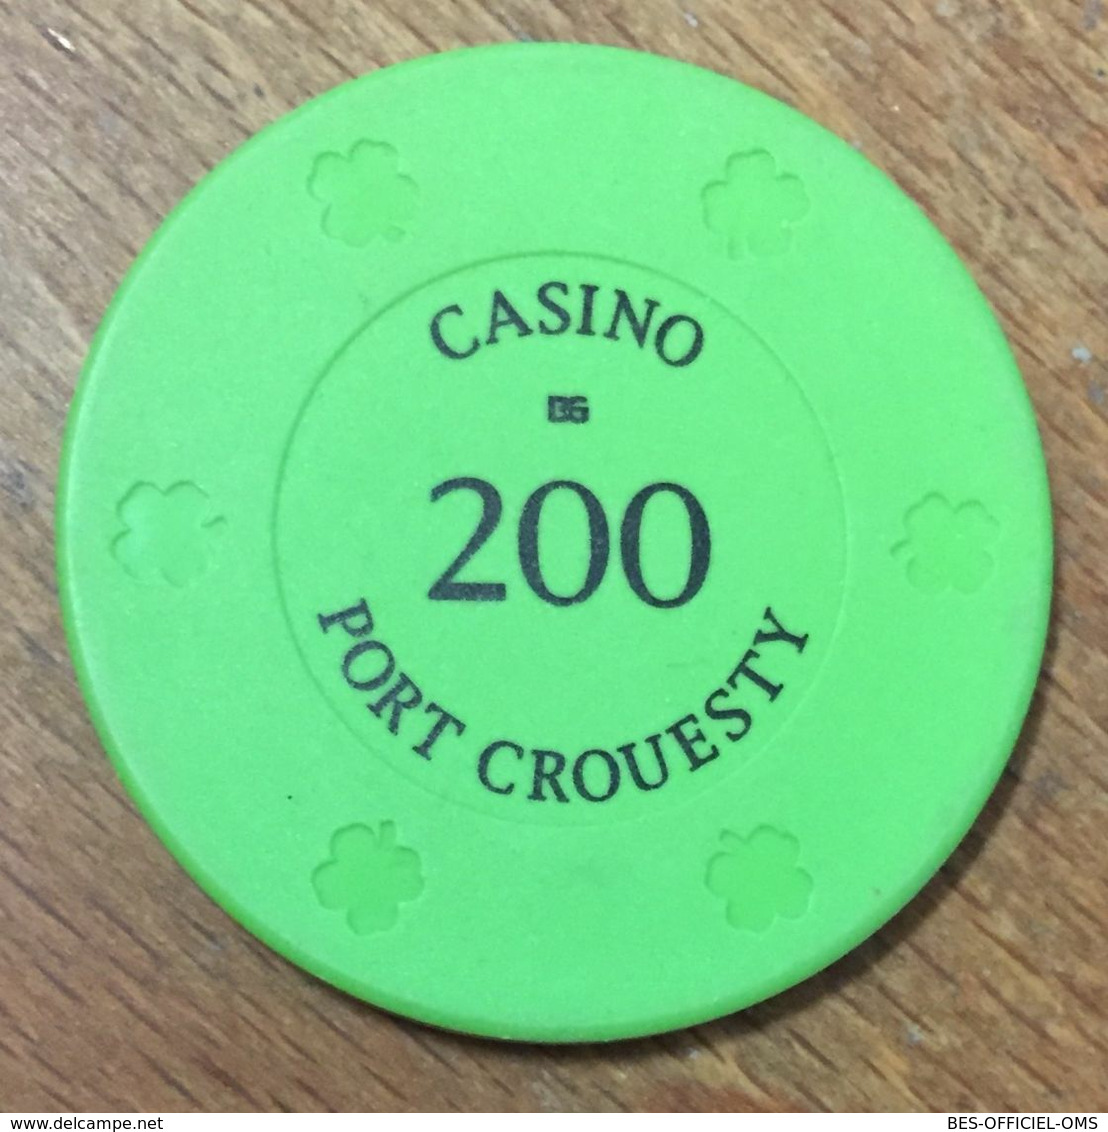 56 PORT CROESTY CASINO JETON DE 200 FRANCS CHIP TOKENS COINS GAMING - Casino